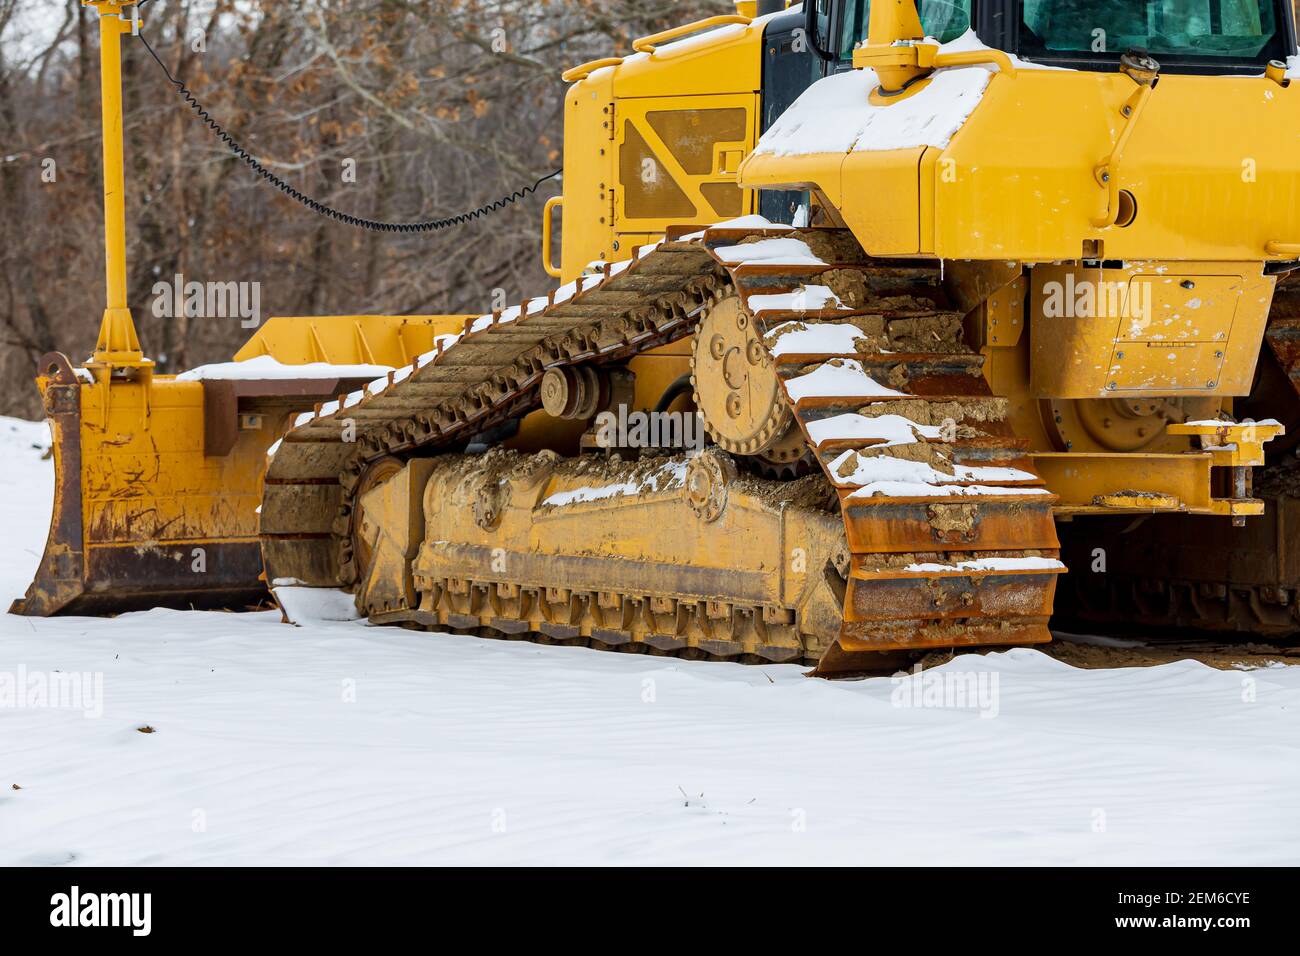 Bulldozer sur le chantier après la tempête de neige hivernale. Concept de l'industrie de la construction, retard de travail et arrêt. Banque D'Images